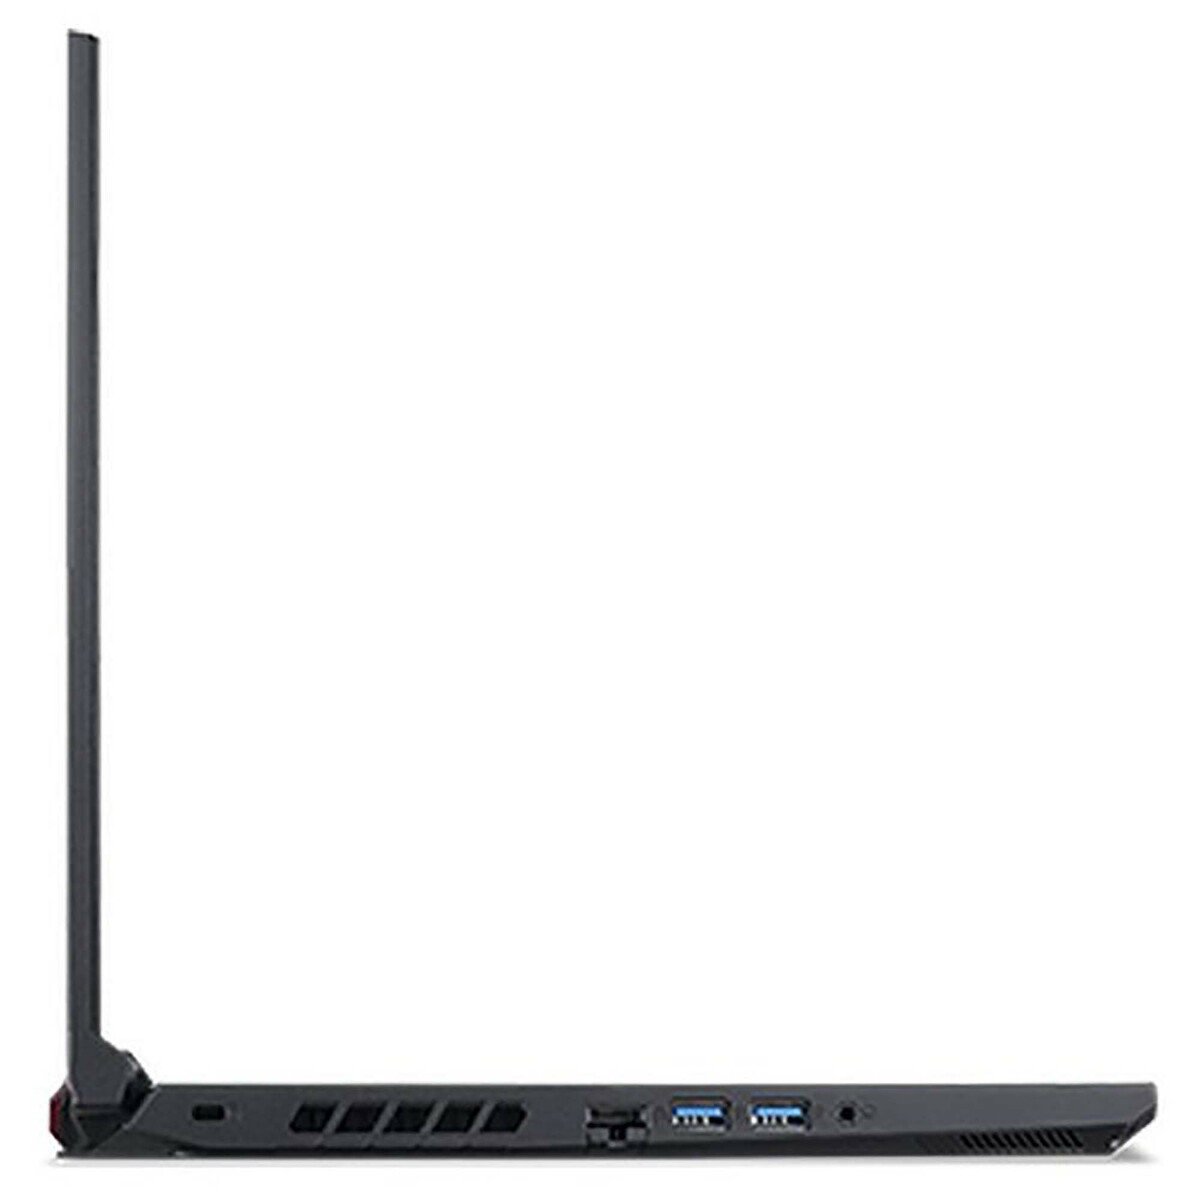 Acer Nitro 5 AN515-44-R0XL Gaming Laptop – Ryzen 7 2.9GHz,16GB RAM,1TBHDD+256GBSSD,NVidia GeForce 4GB GTX™ 1650,Windows10,15.6inch FHD,Black,English/Arabic Keyboard